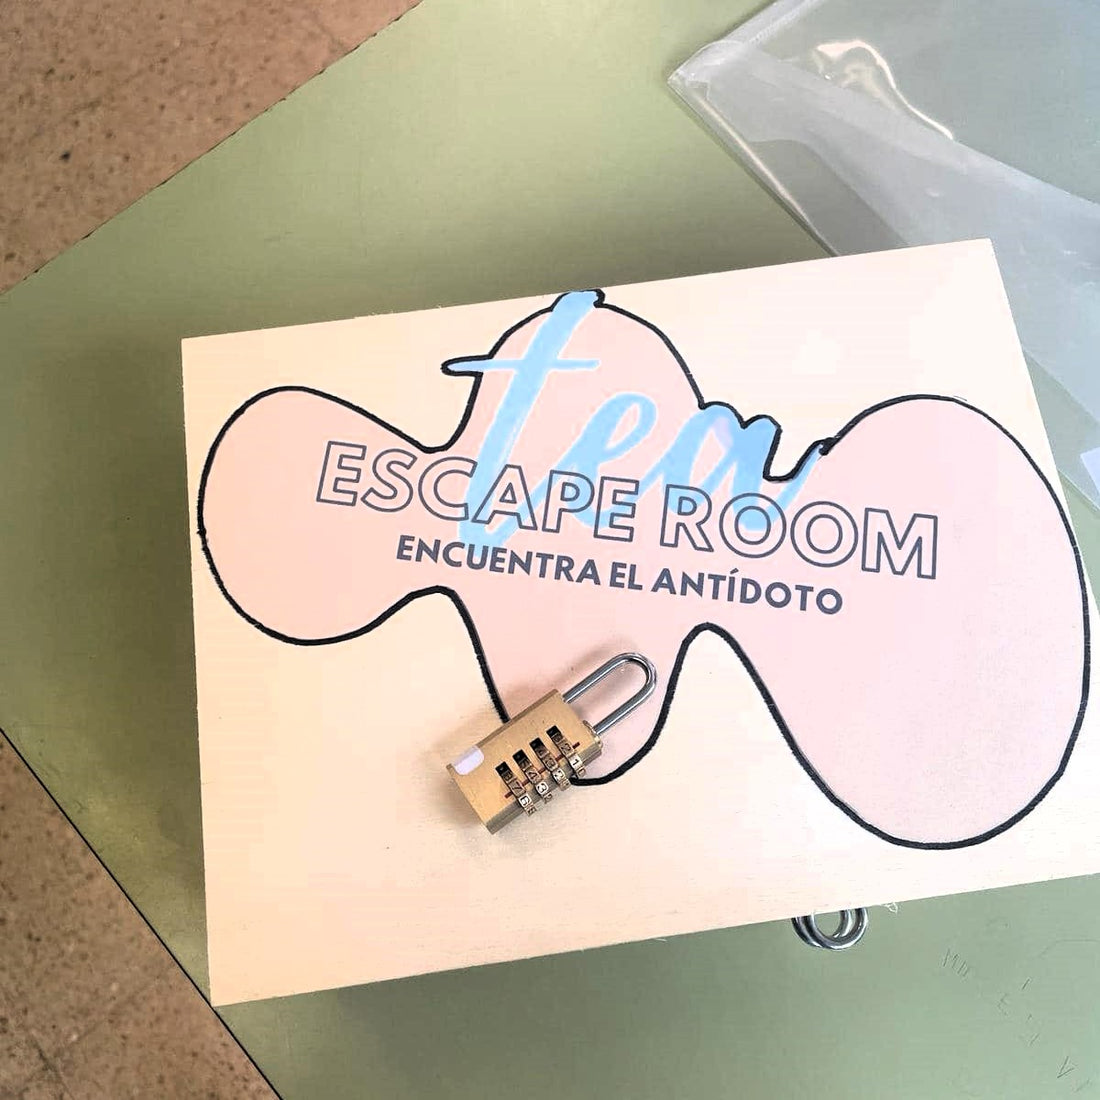 En primer plano, aparece una caja con el logo de la Escape Room y un candado sobre ella